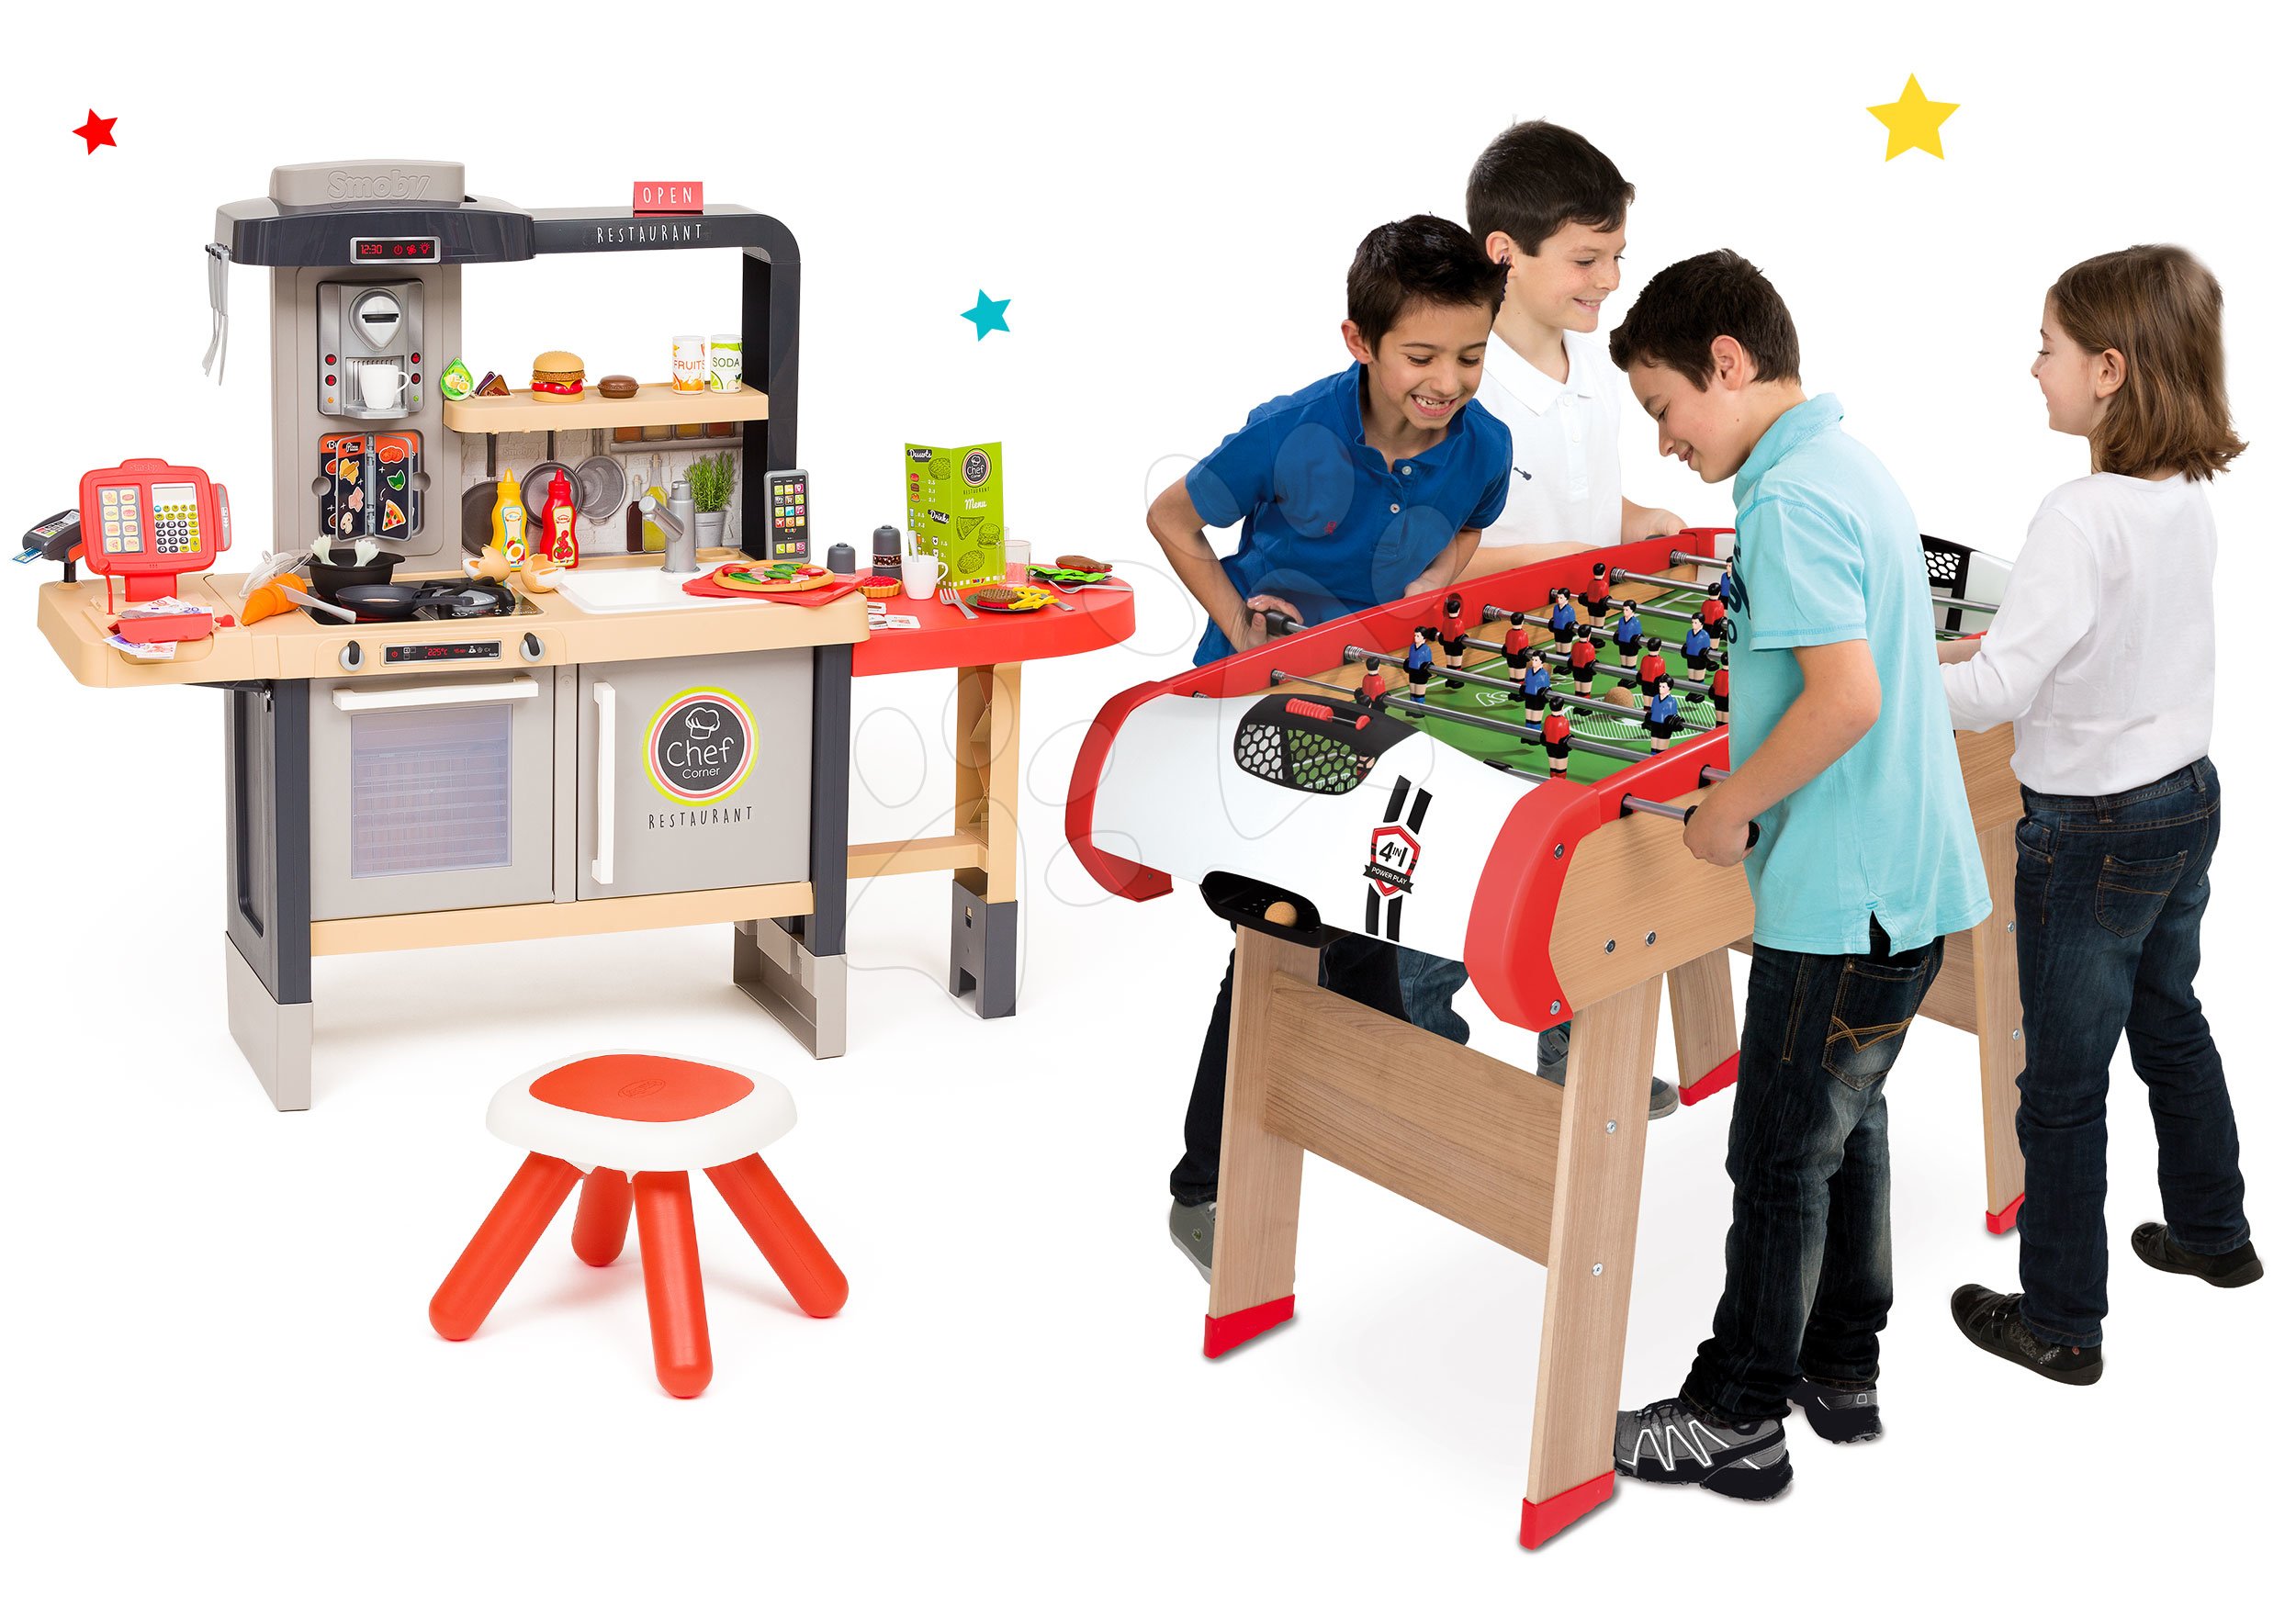 Kuchynky pre deti sety - Set reštaurácia s elektronickou kuchynkou Chef Corner Restaurant Smoby a drevený stolný futbal, biliard, hokej a tenis